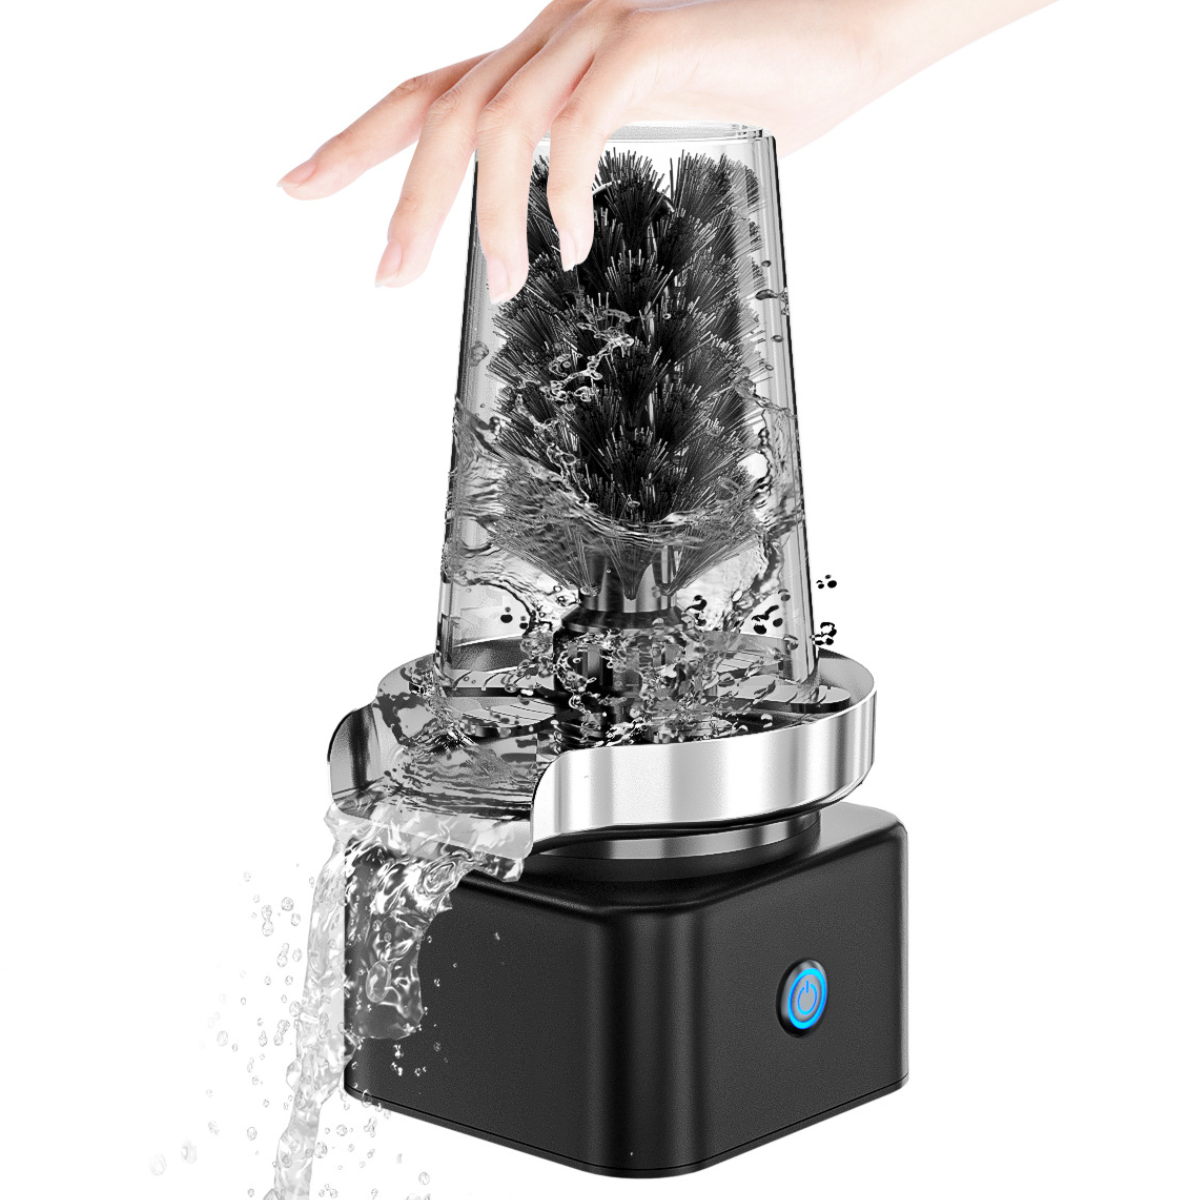 UWOT Tassenwaschmaschine: Automatische Reinigung, Drücken Tiefenreinigung Nylonborsten, Reinigungsbürste Weiß Drehen, und